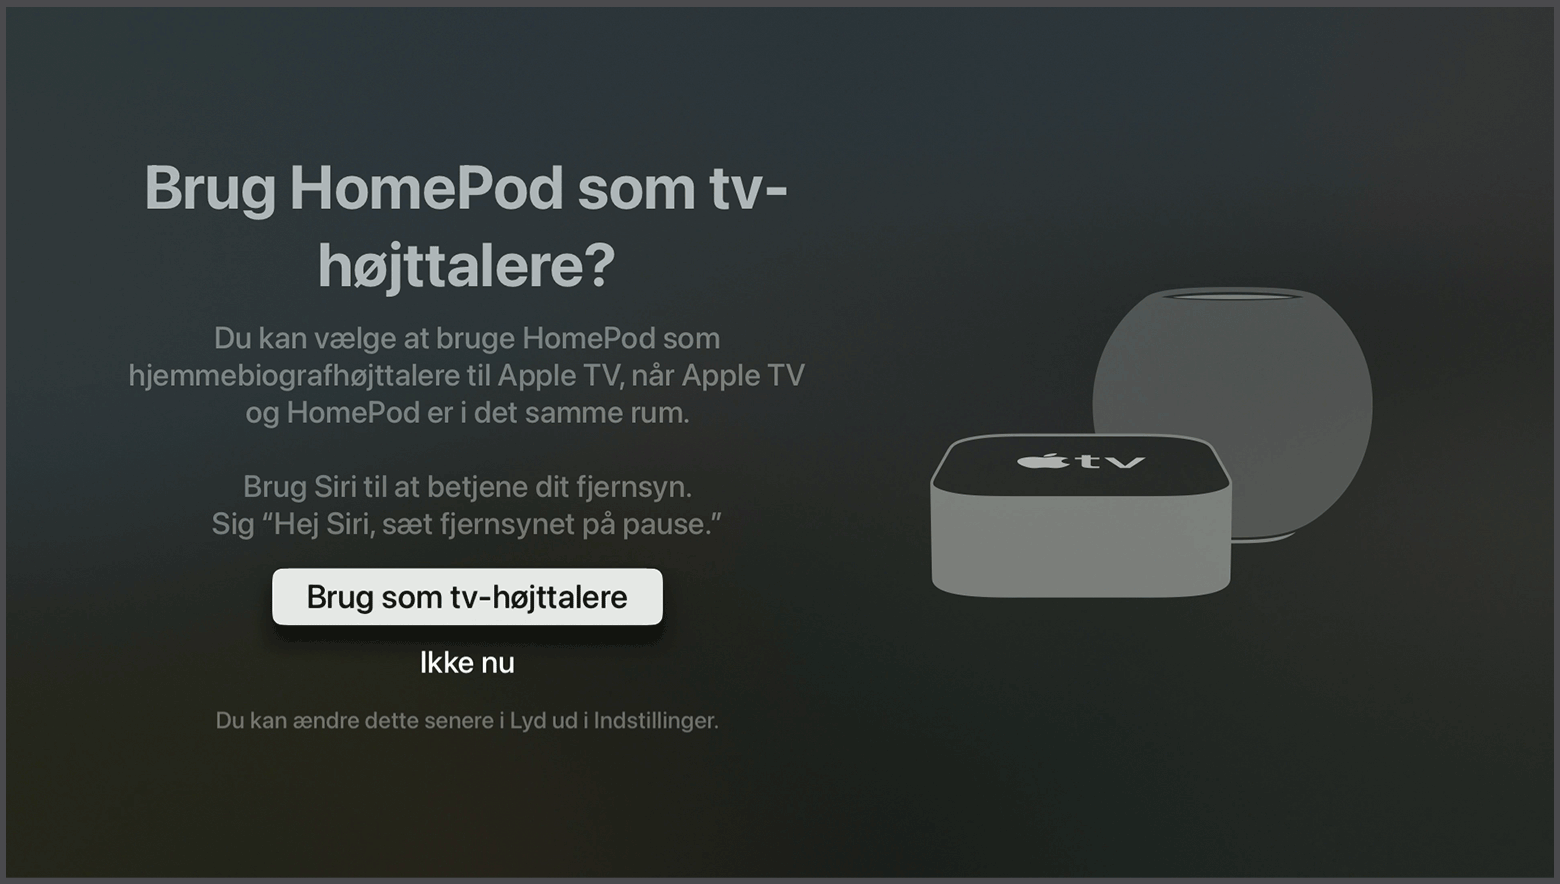 tvOS-skærm, hvor der spørges, om HomePod-højttalere skal bruges som Apple TV-højttalere